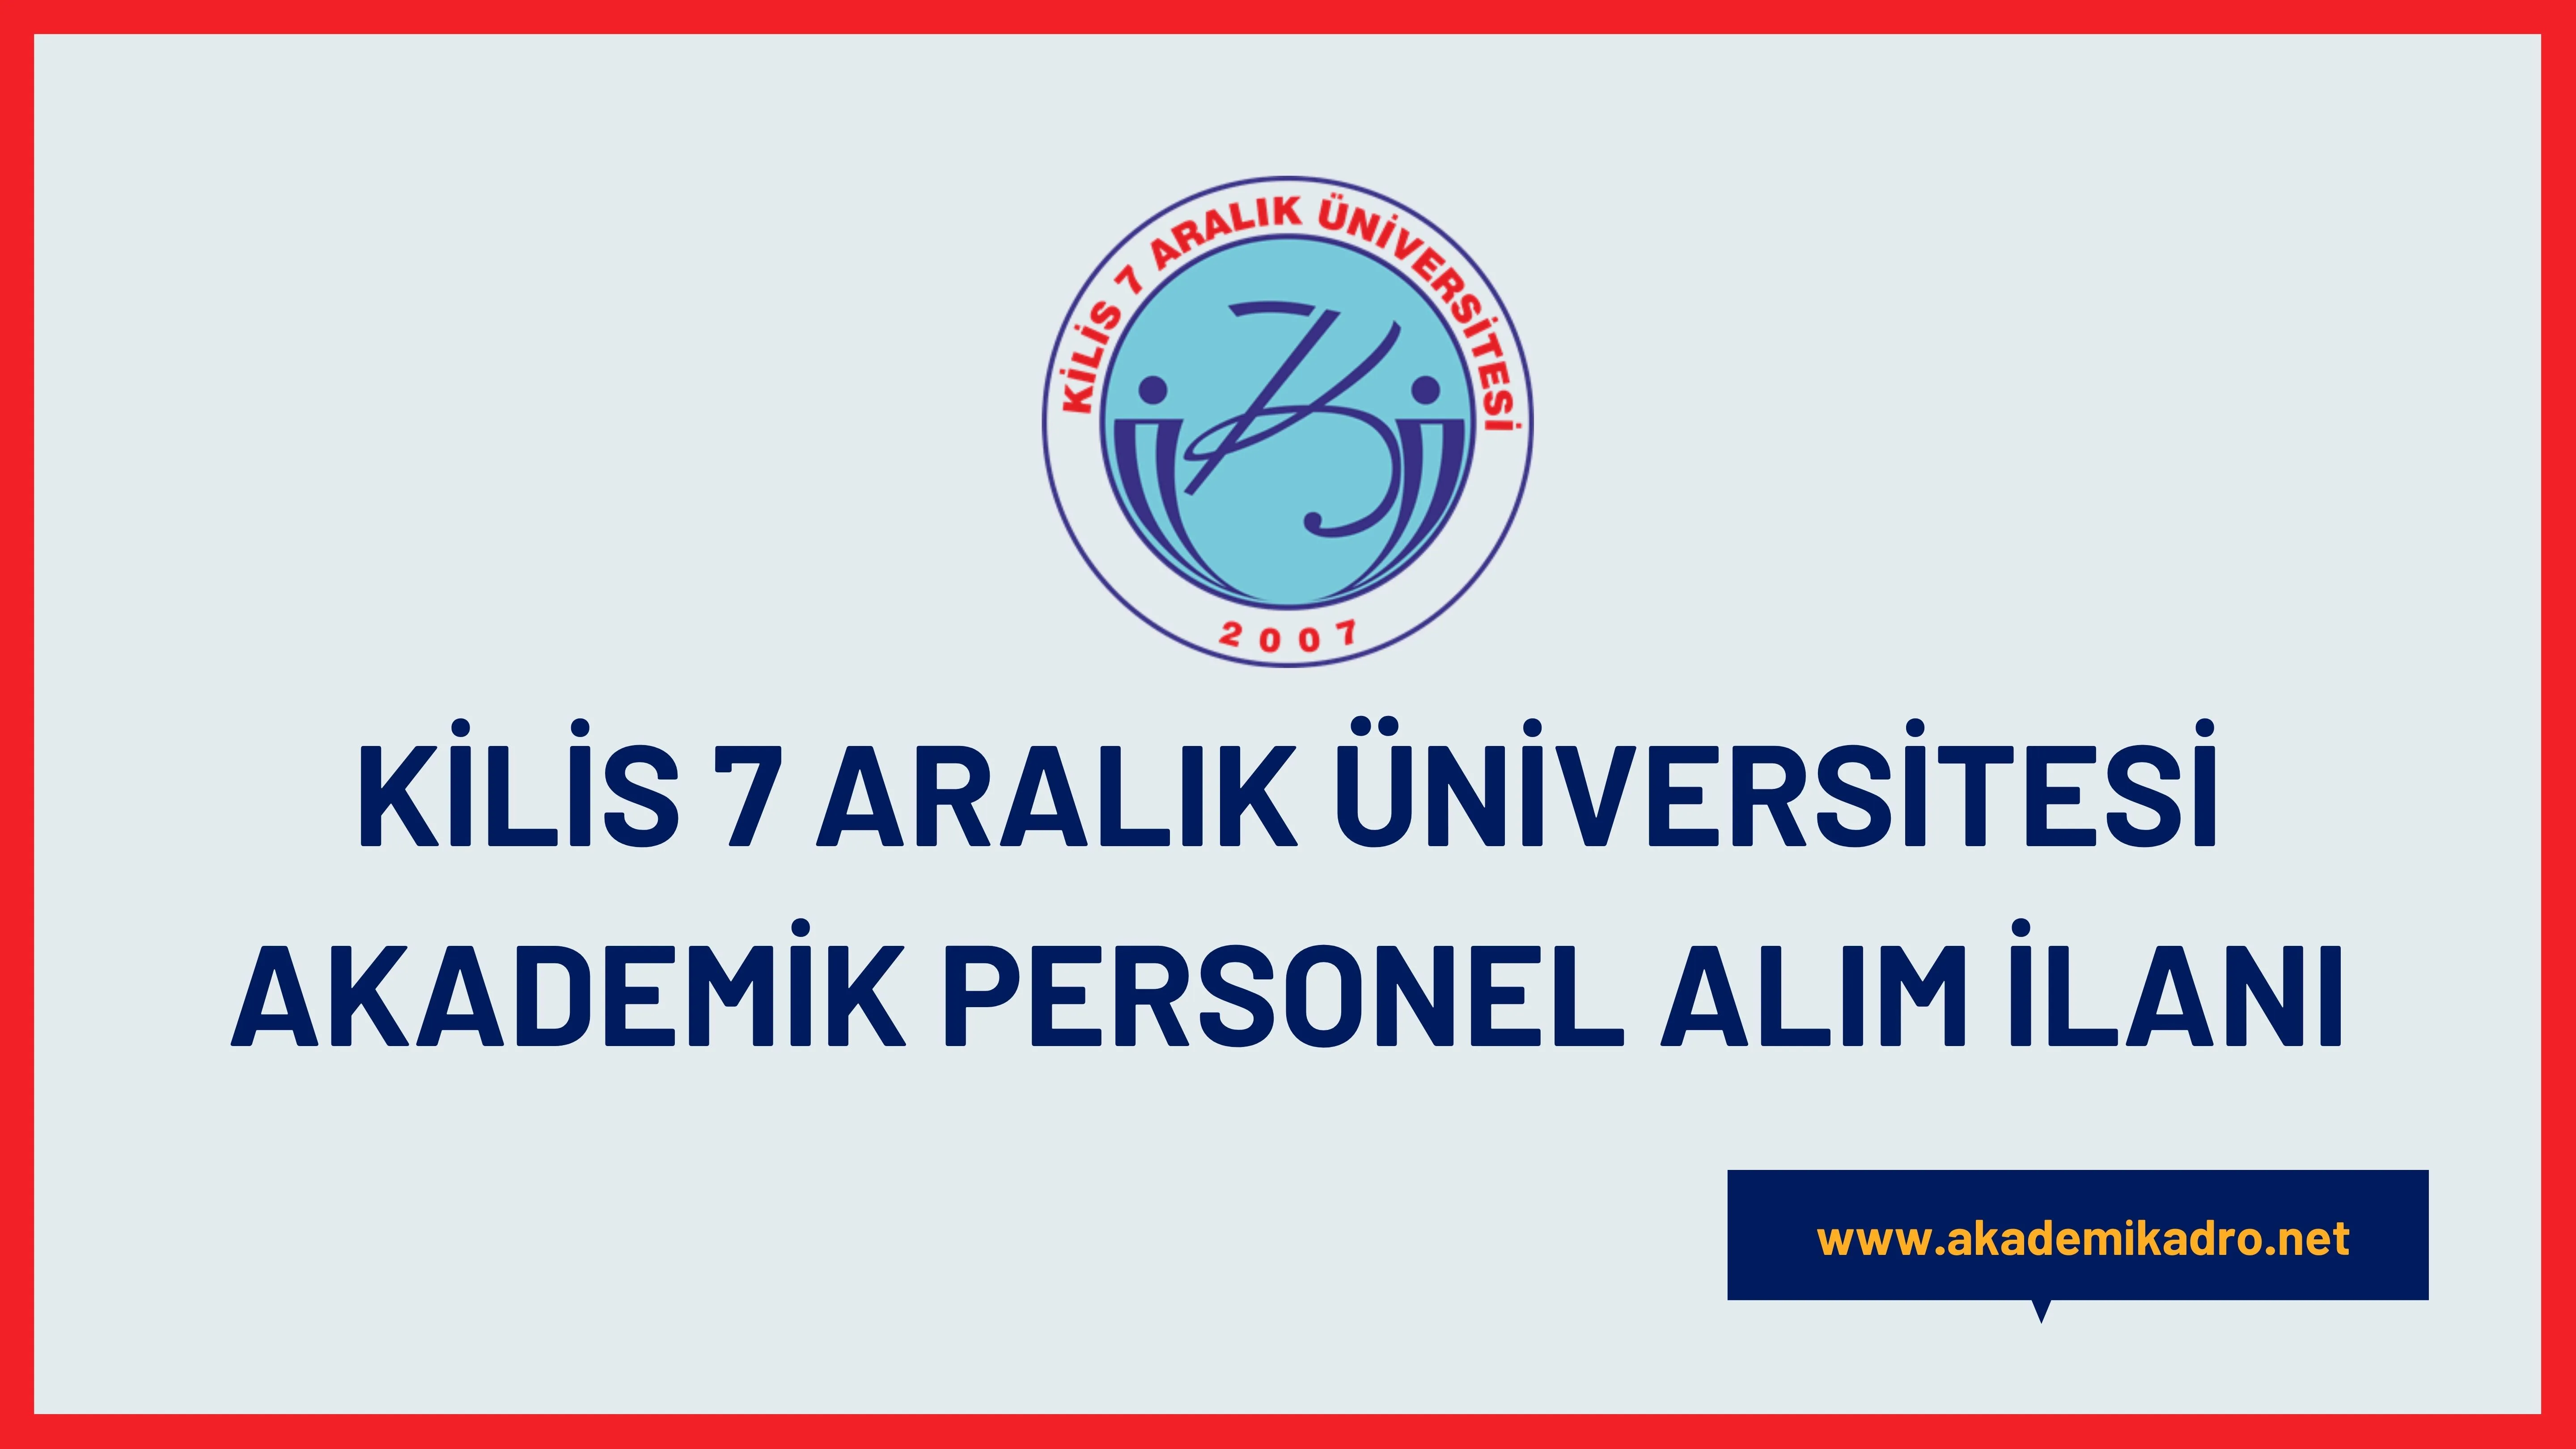 Kilis 7 Aralık Üniversitesi birçok alandan 17 akademik personel alacak. Son başvuru tarihi 06 Ocak 2023.